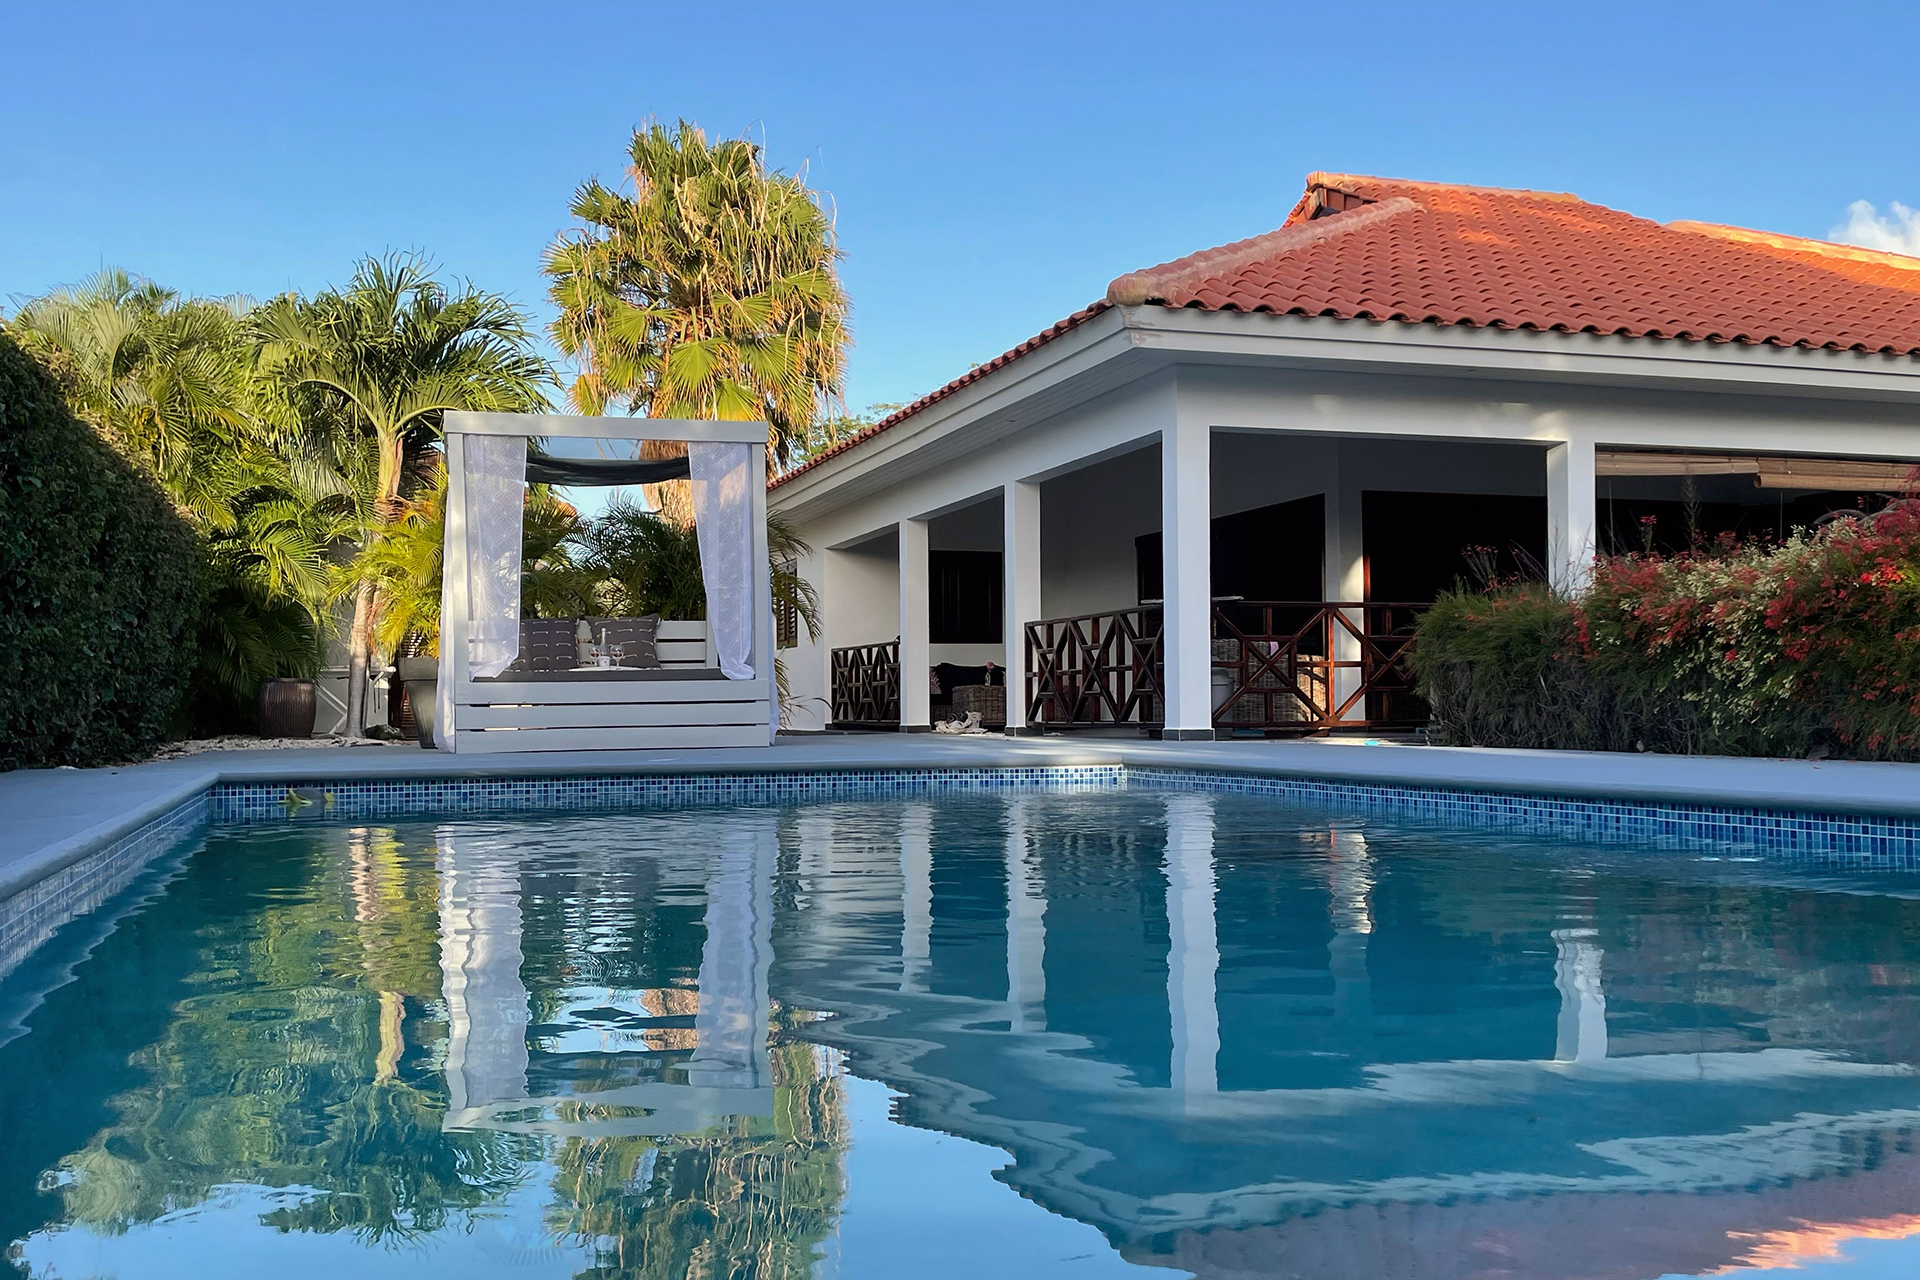 Luxe villa op Curaçao Flamboyan huren